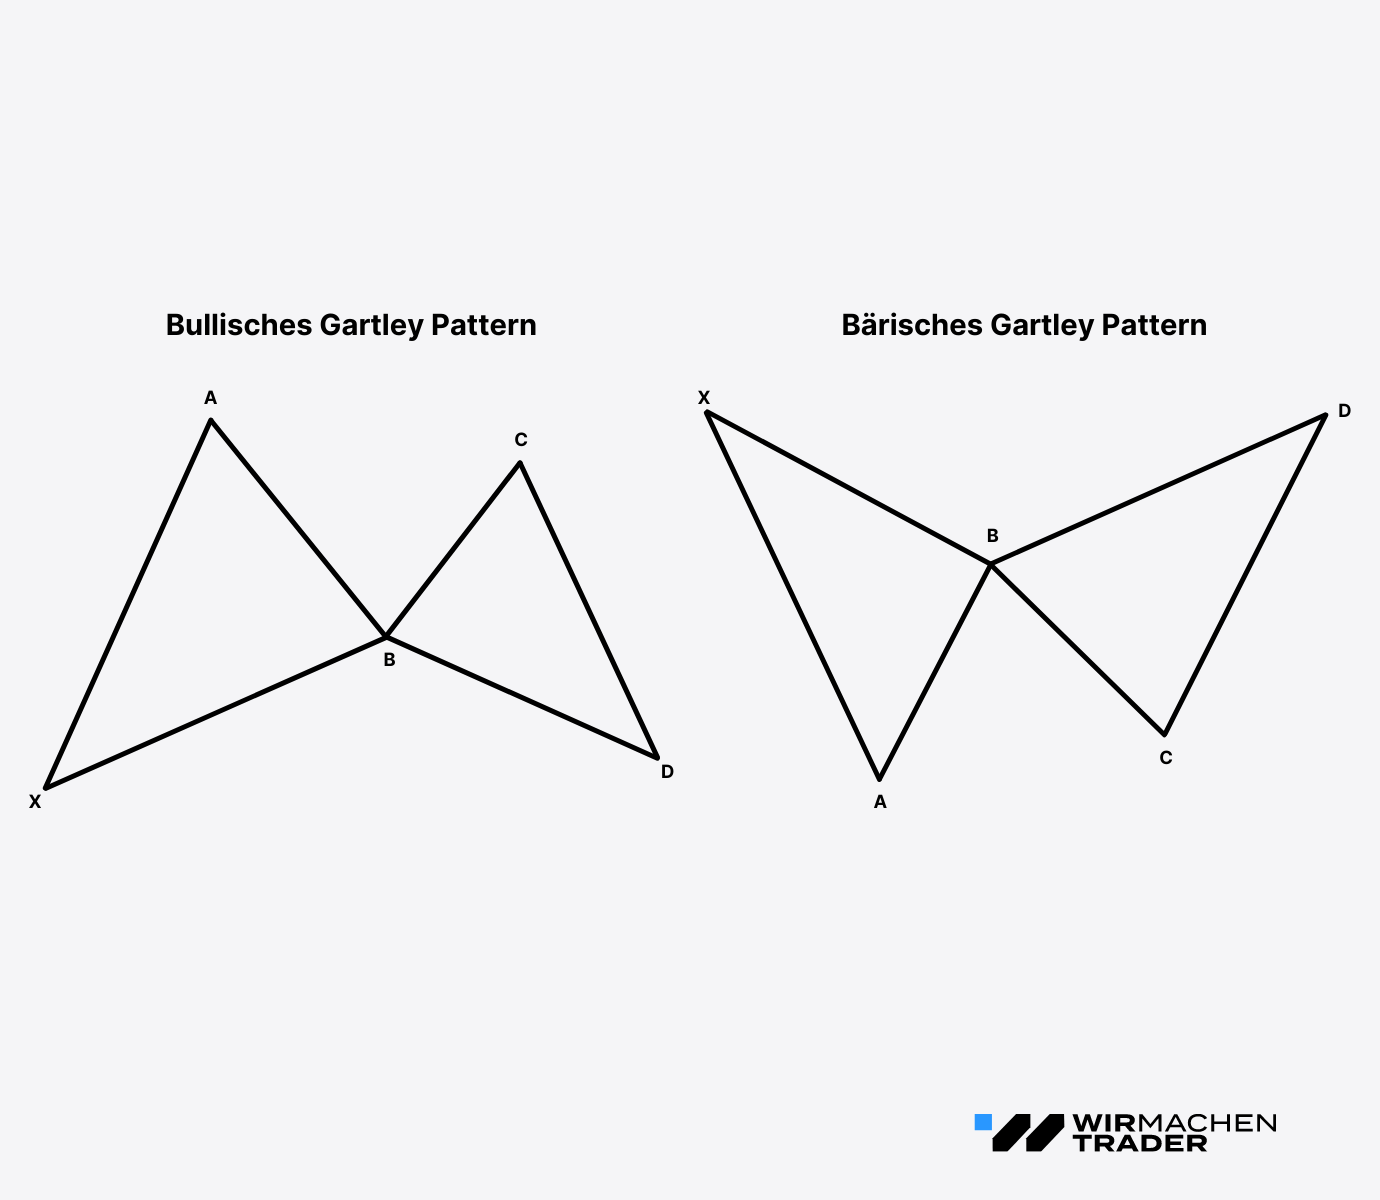 Das Bullische und Bärische Gartley Pattern mit seinen 5 Punkten schematisch dargestellt im Vergleich